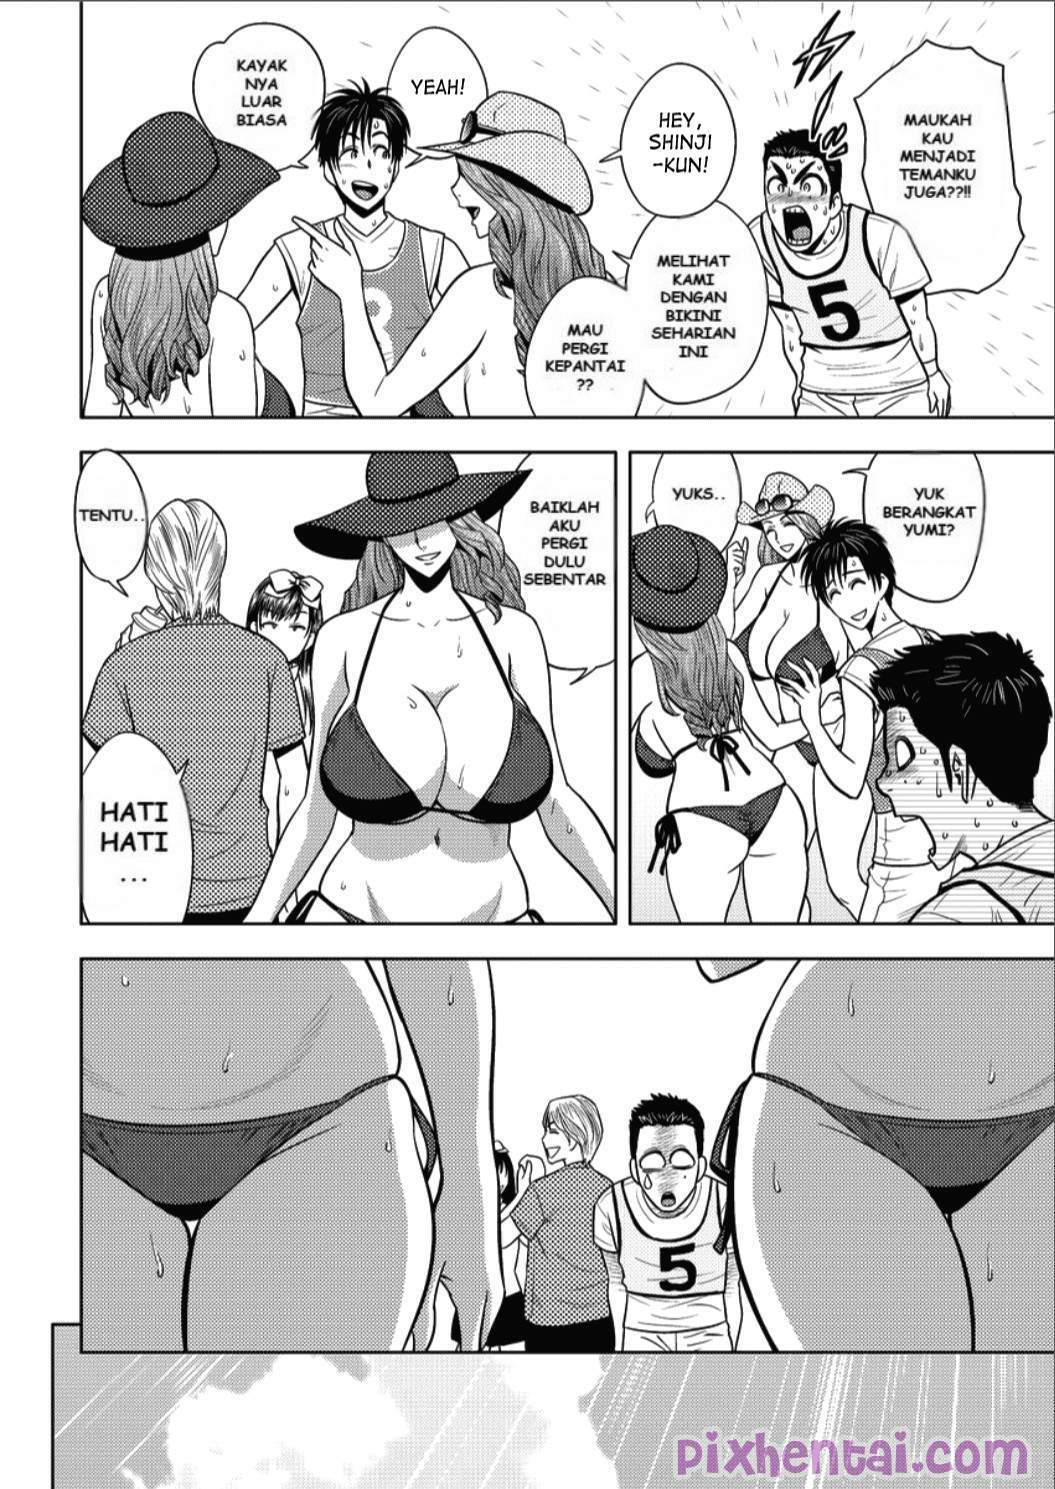 Komik hentai xxx manga sex bokep sesuatu yang dapat memuaskan tubuh dan pikiran 04